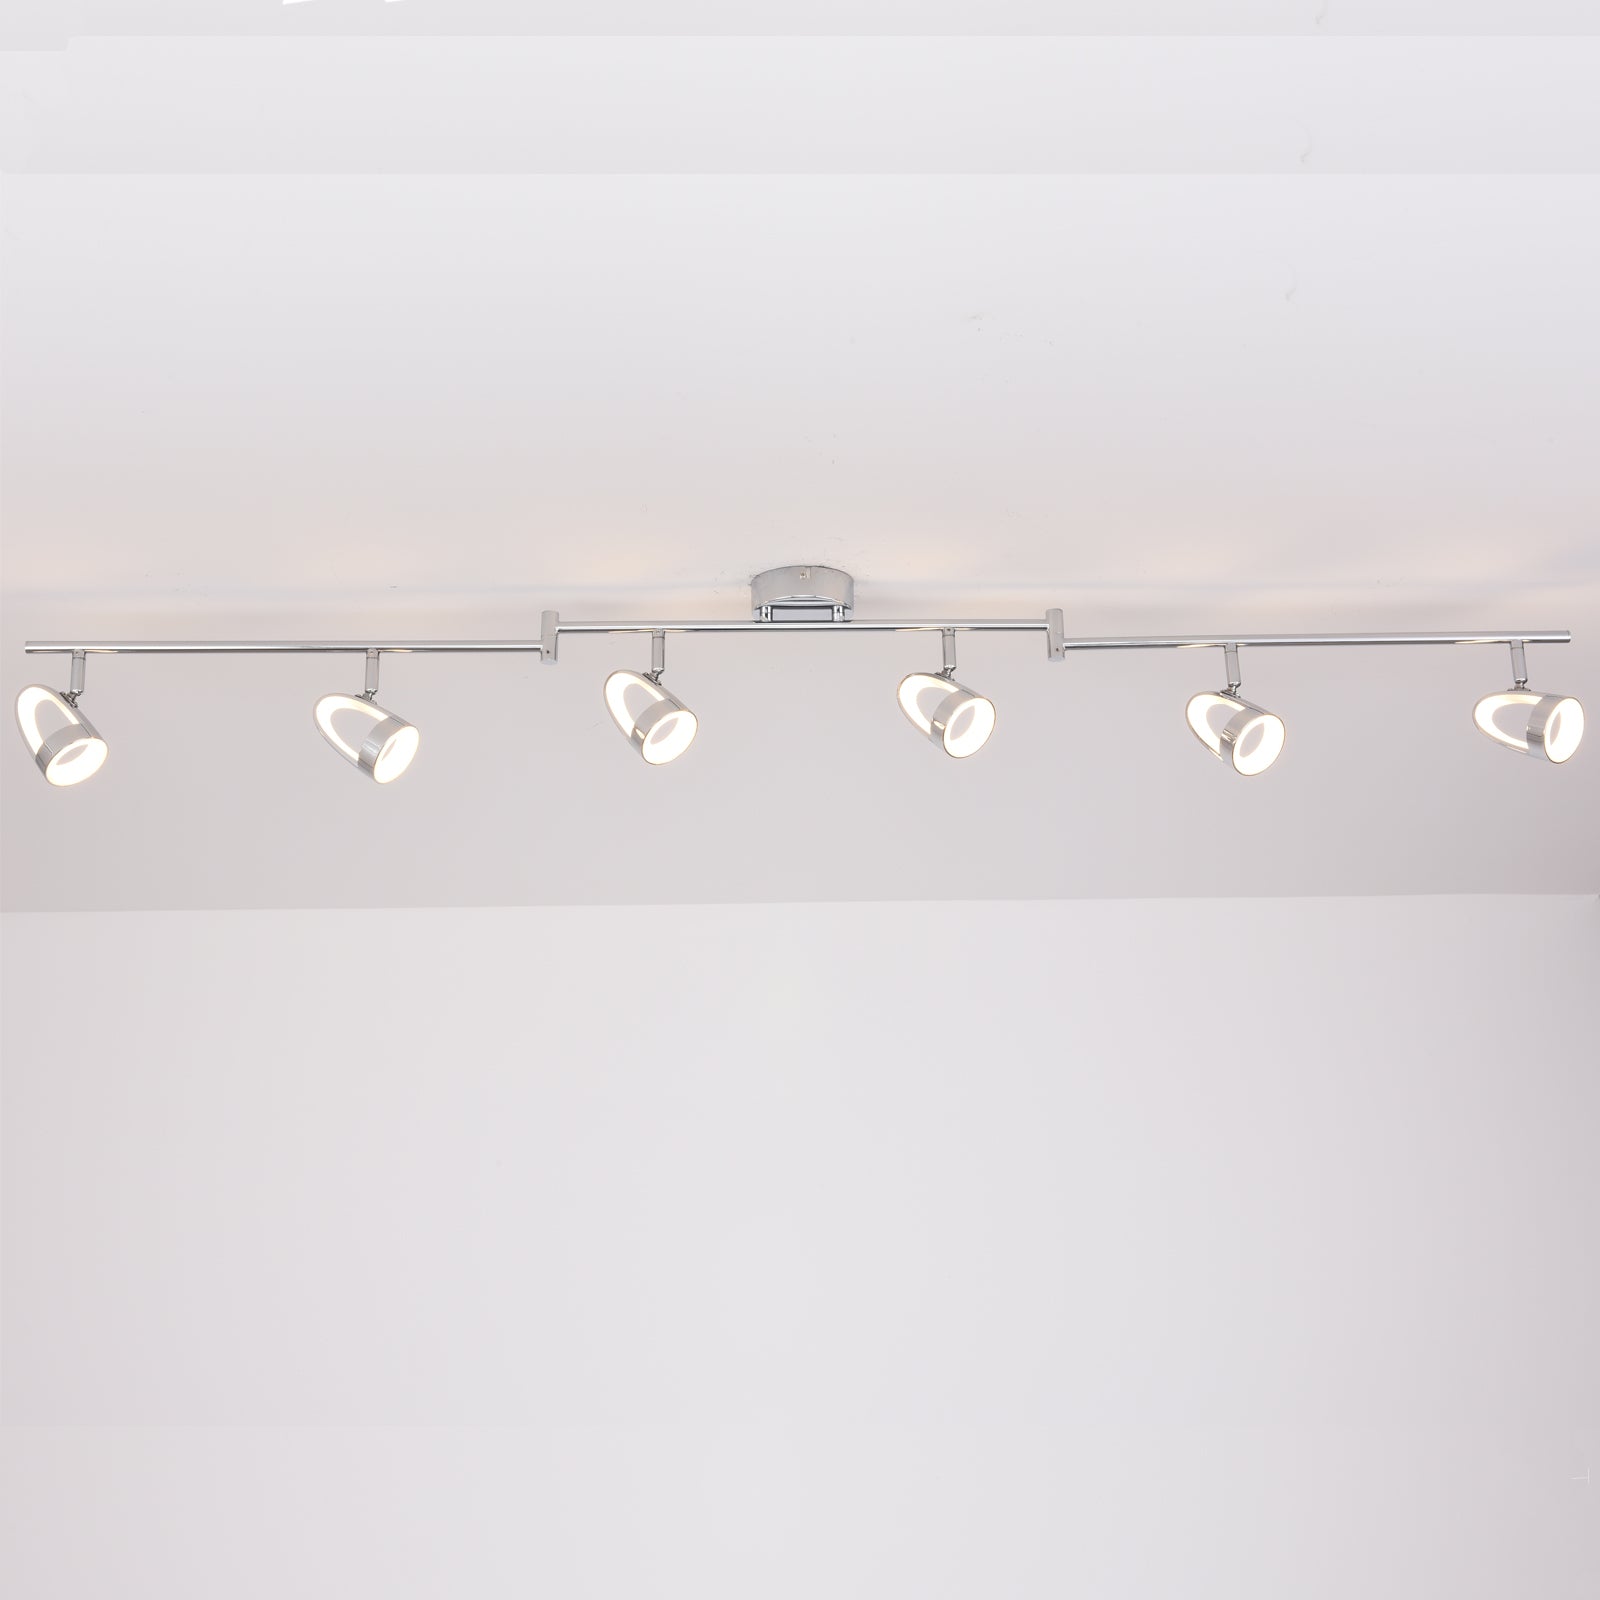 LED 6 Way Adjustable Bar Ceiling Spotlights Modern Lighting Adjustable Lights Warm White (3000K)